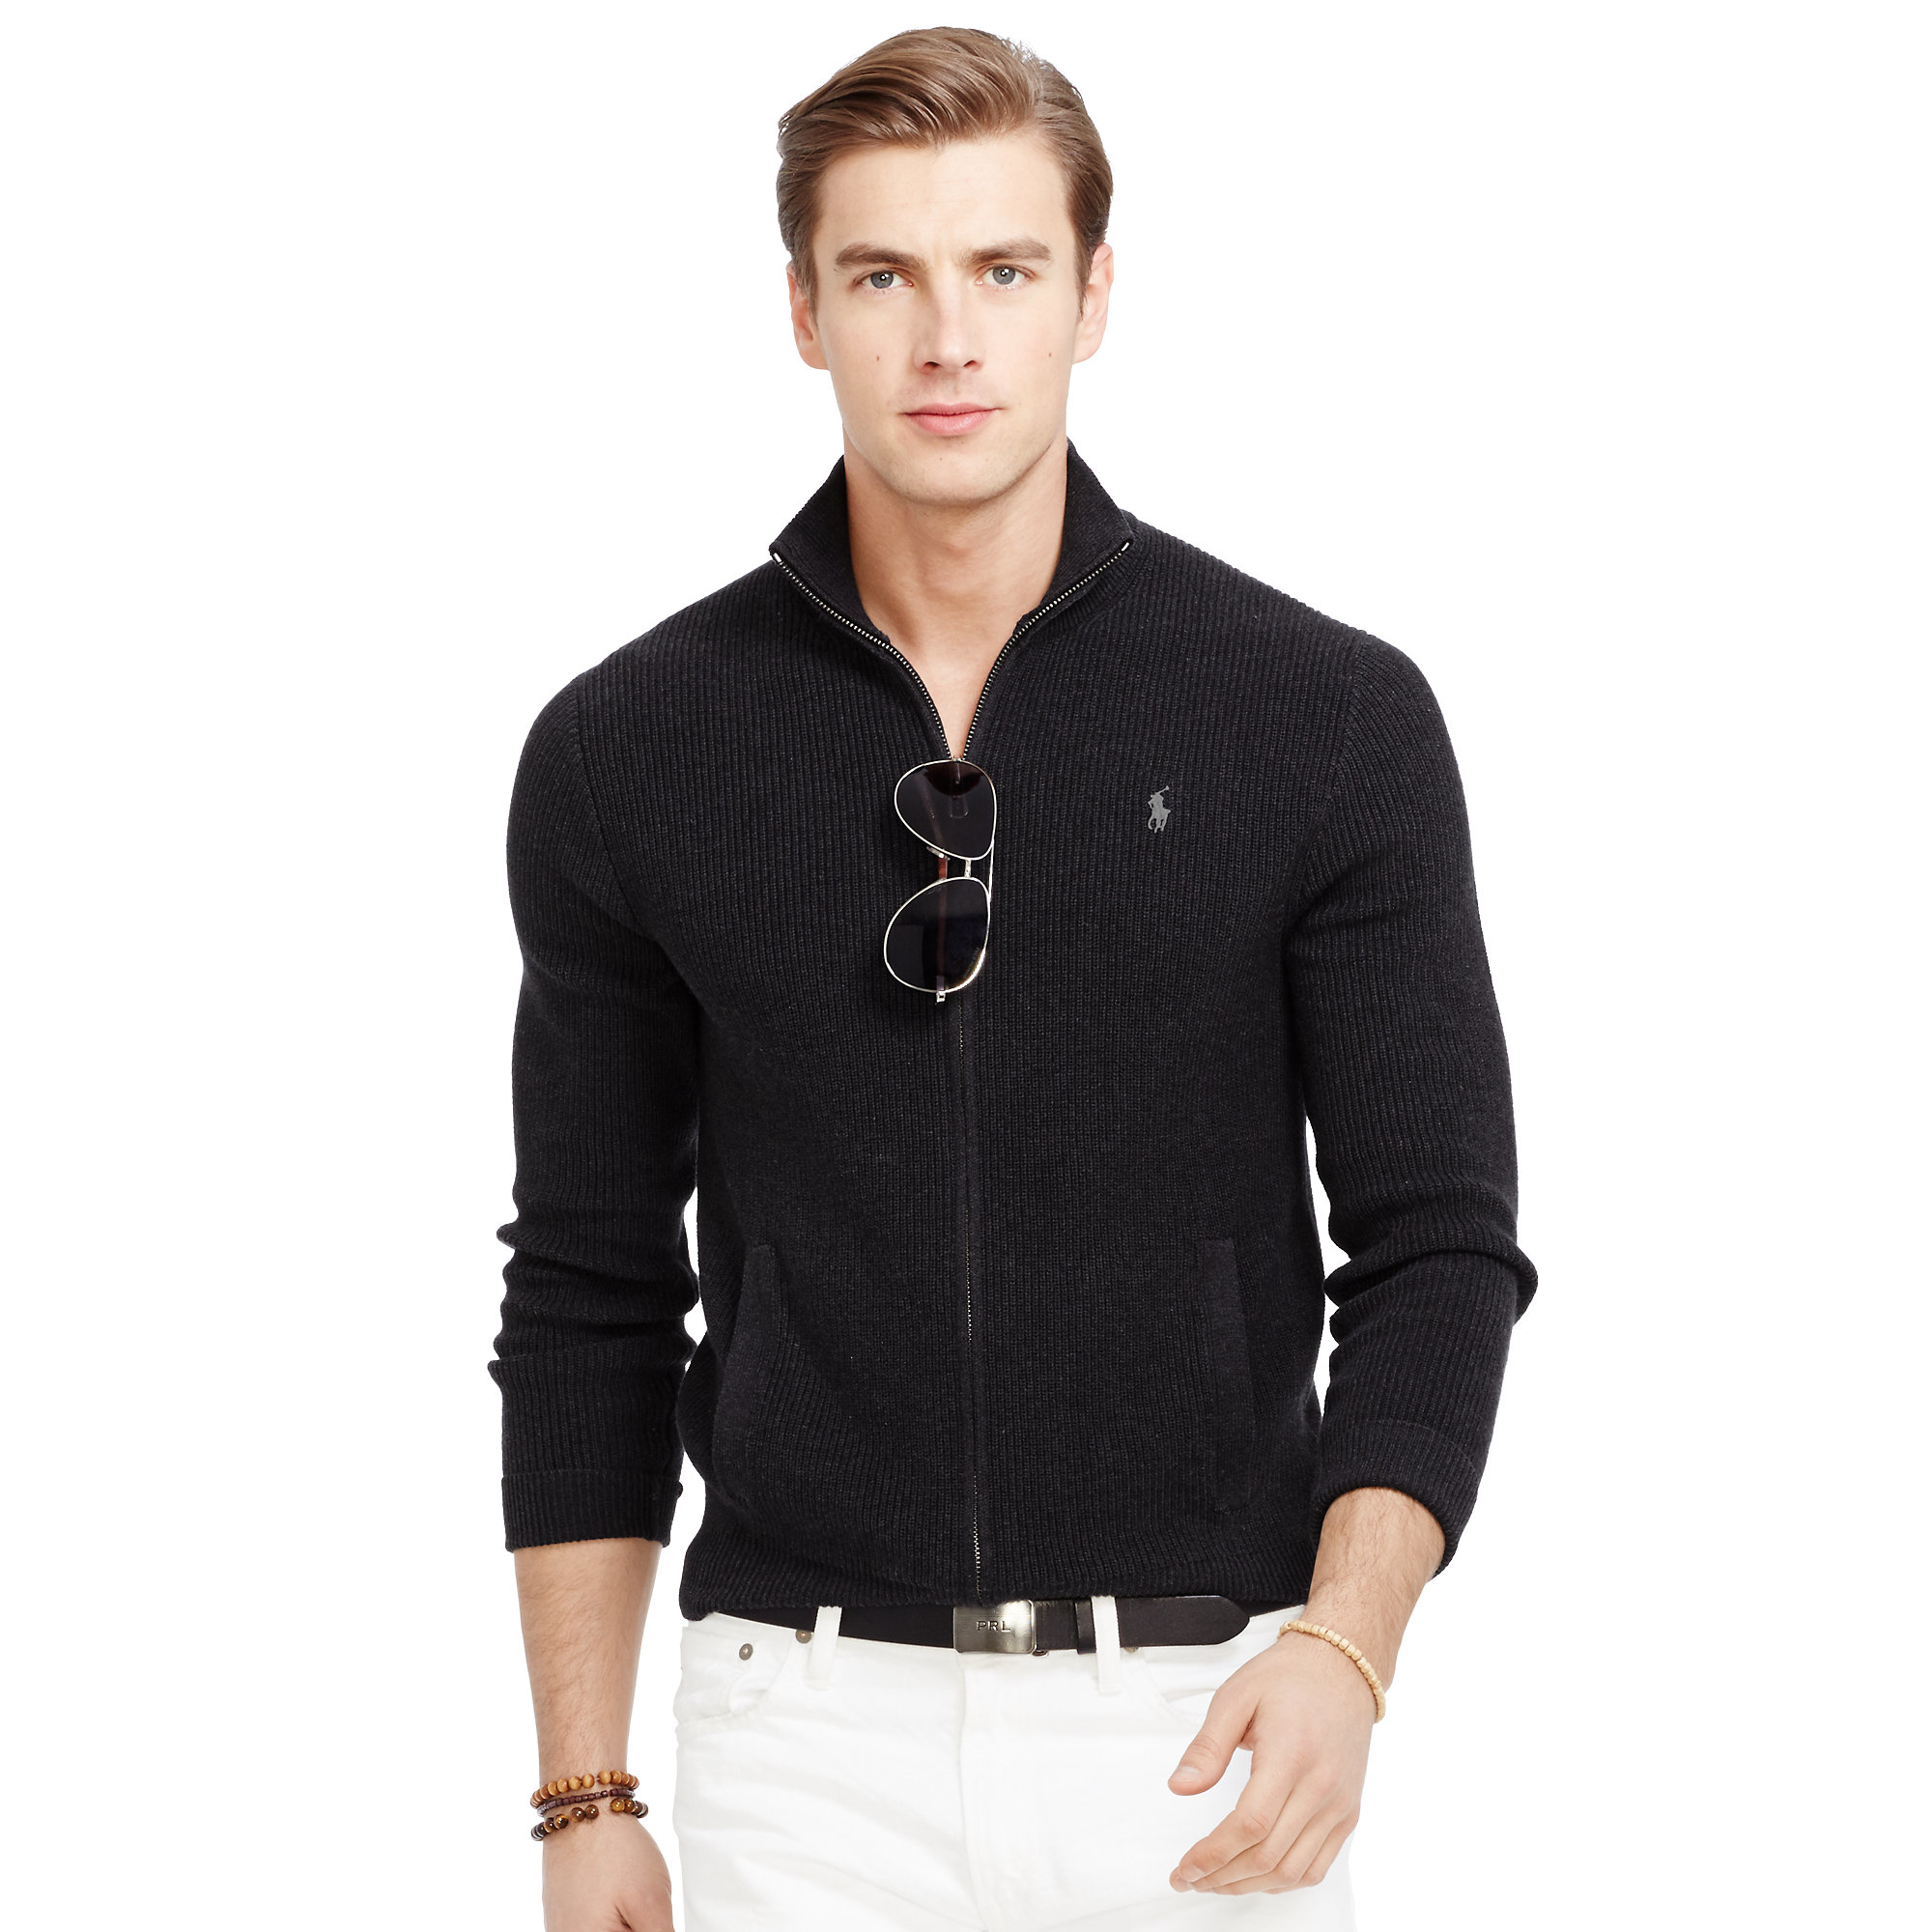 Polo Ralph Lauren Cotton Full-zip Sweater in Black for Men - Lyst